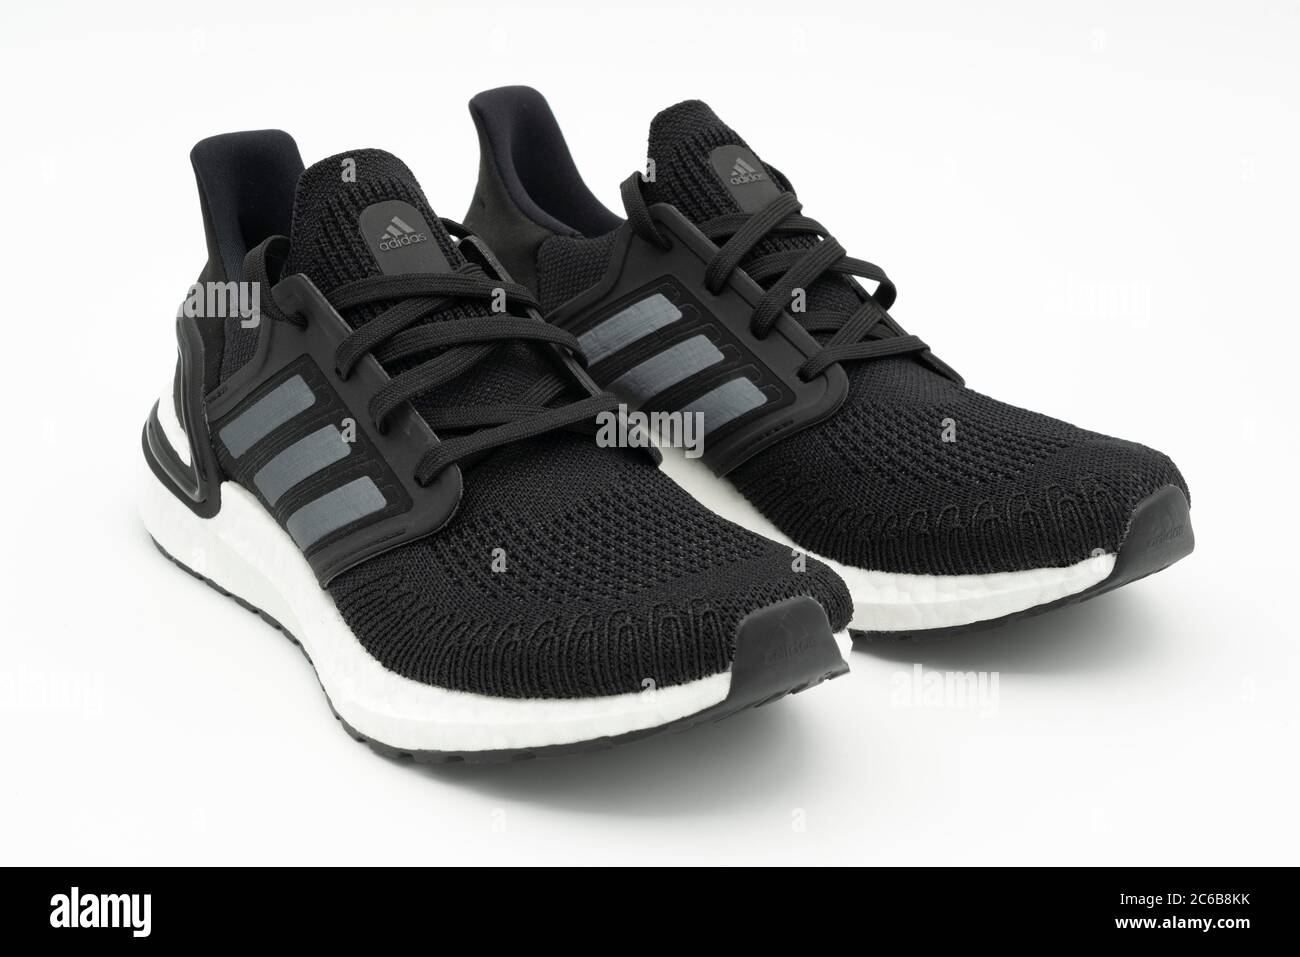 Adidas schwarz weiß sneakers Stockfotos und -bilder Kaufen - Alamy